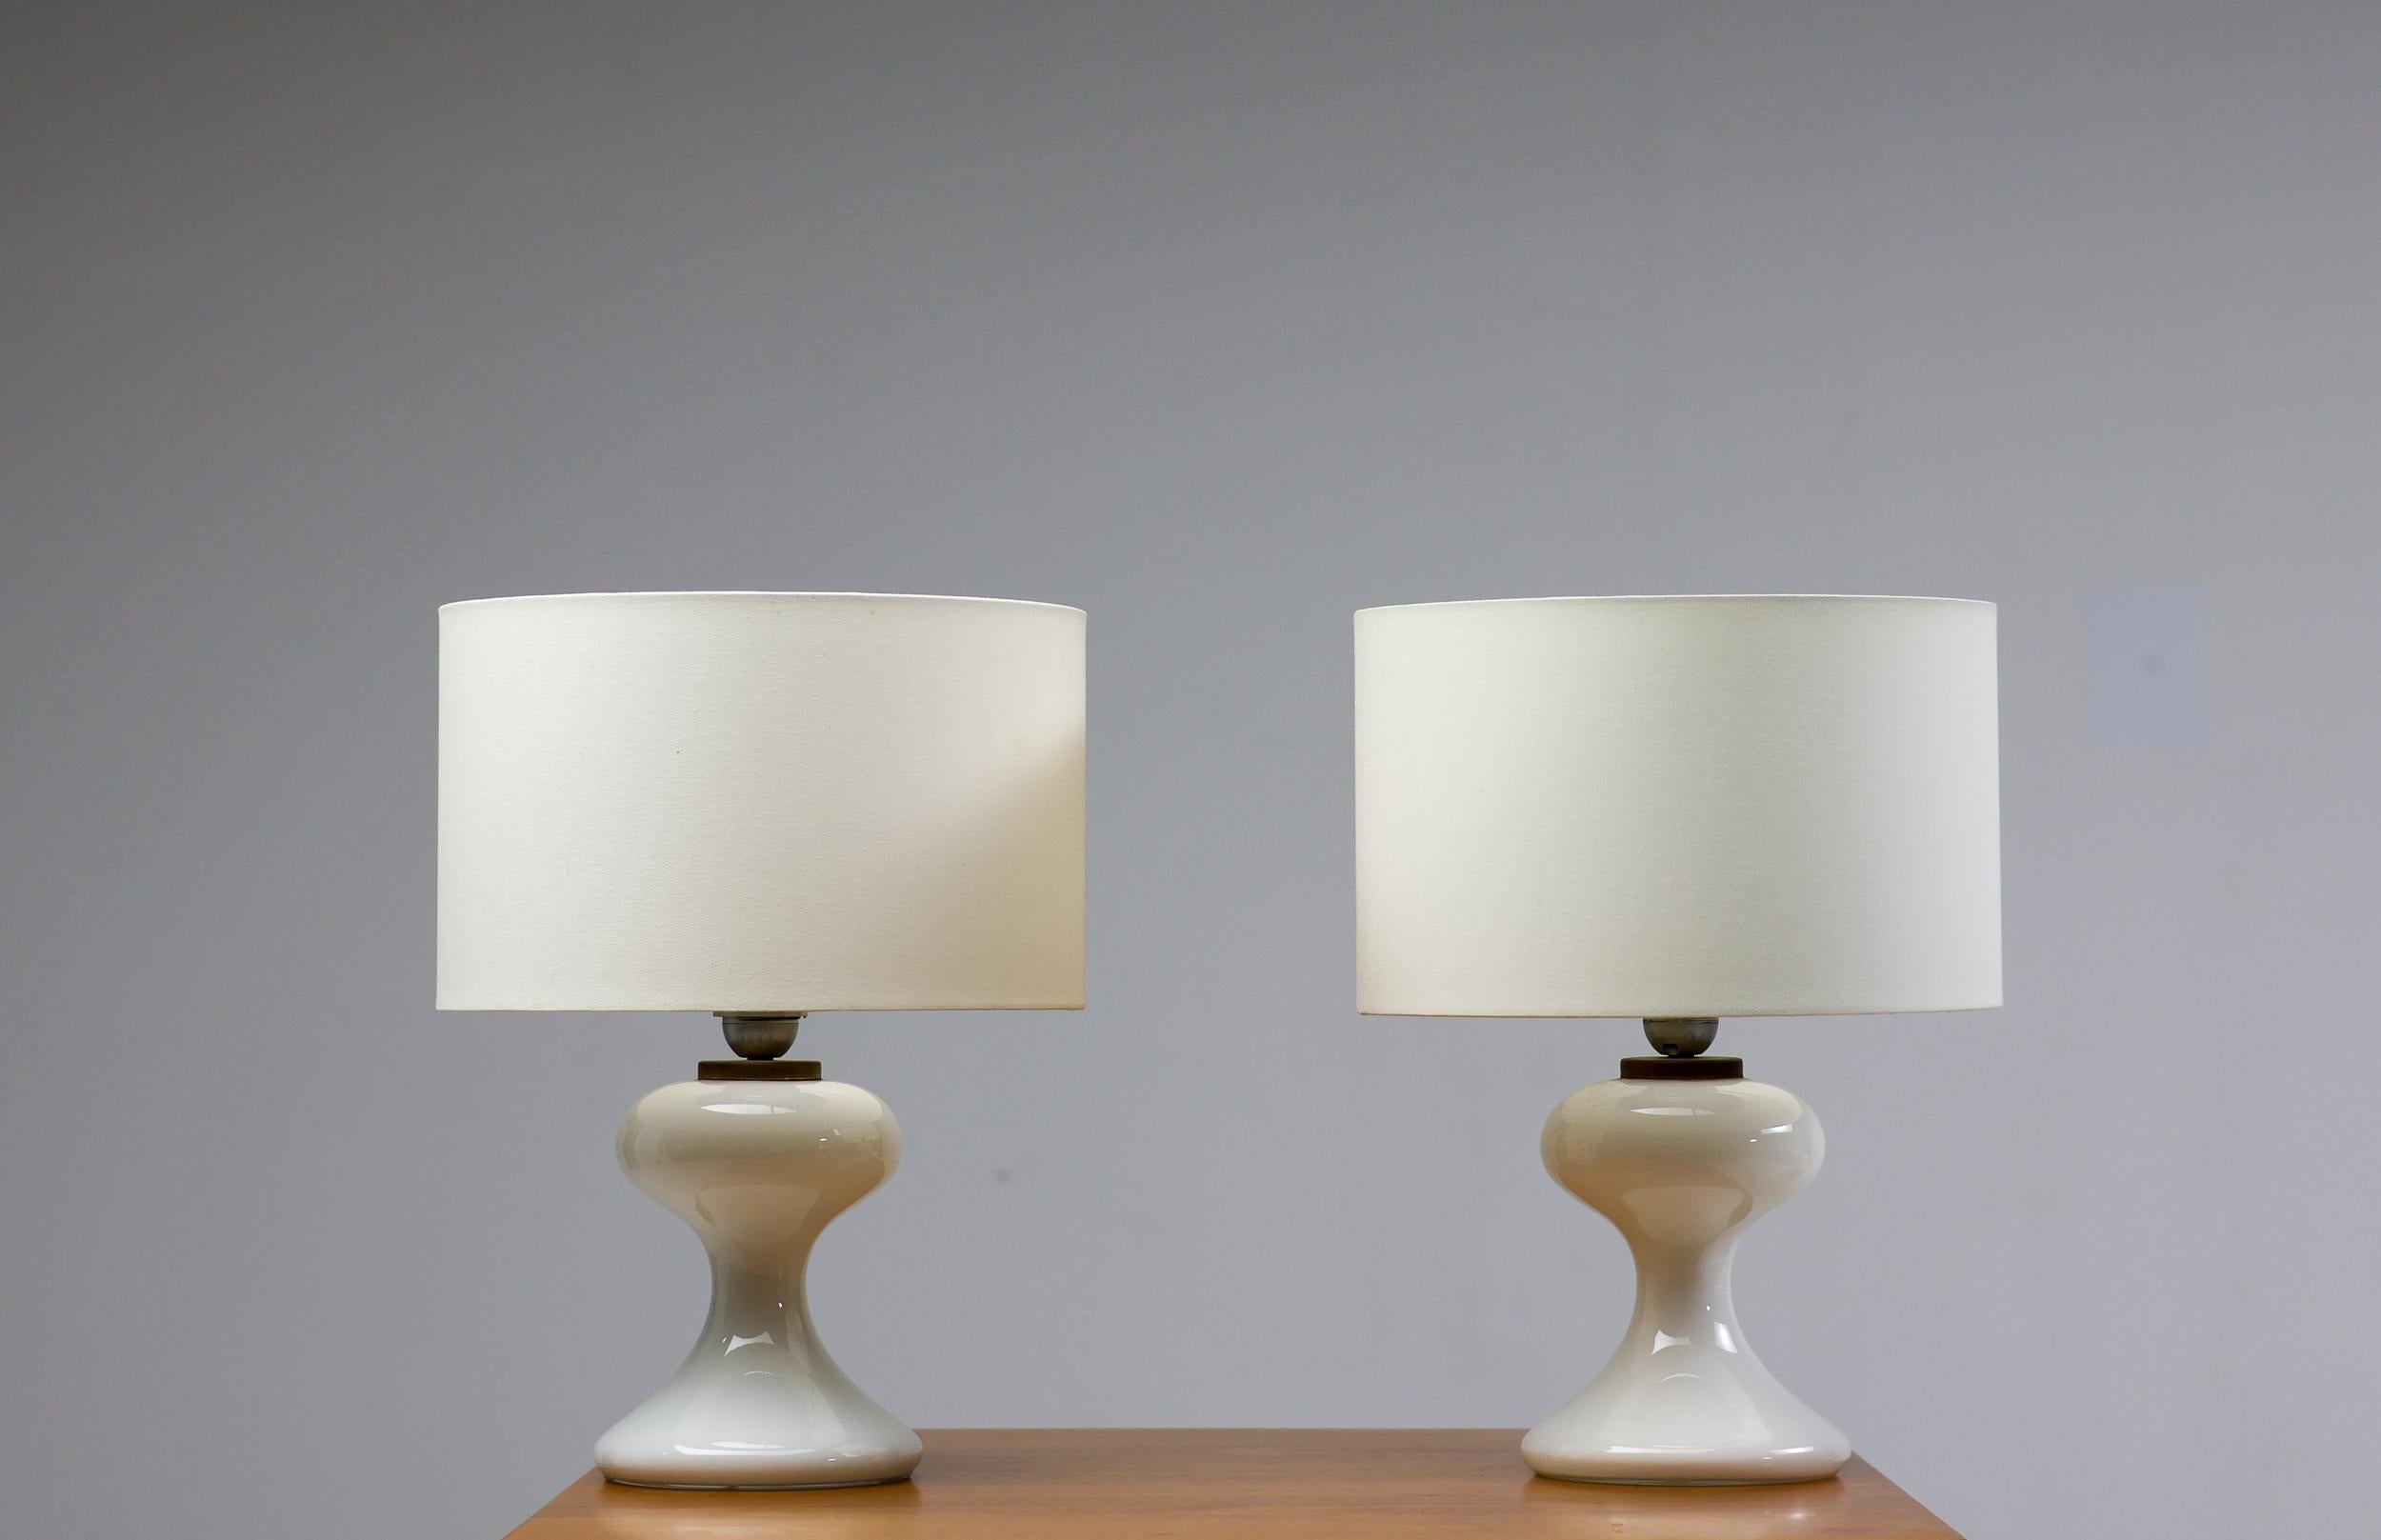 Tolles Paar weißer Tischlampen aus mundgeblasenem Glas mit weißem Leinenschirm, 1968 von Ingo Maurer für seine Firma M-Design entworfen. Ein sehr elegantes Design, das einem Raum trotz des strengen, modernen Erscheinungsbildes eine warme Atmosphäre